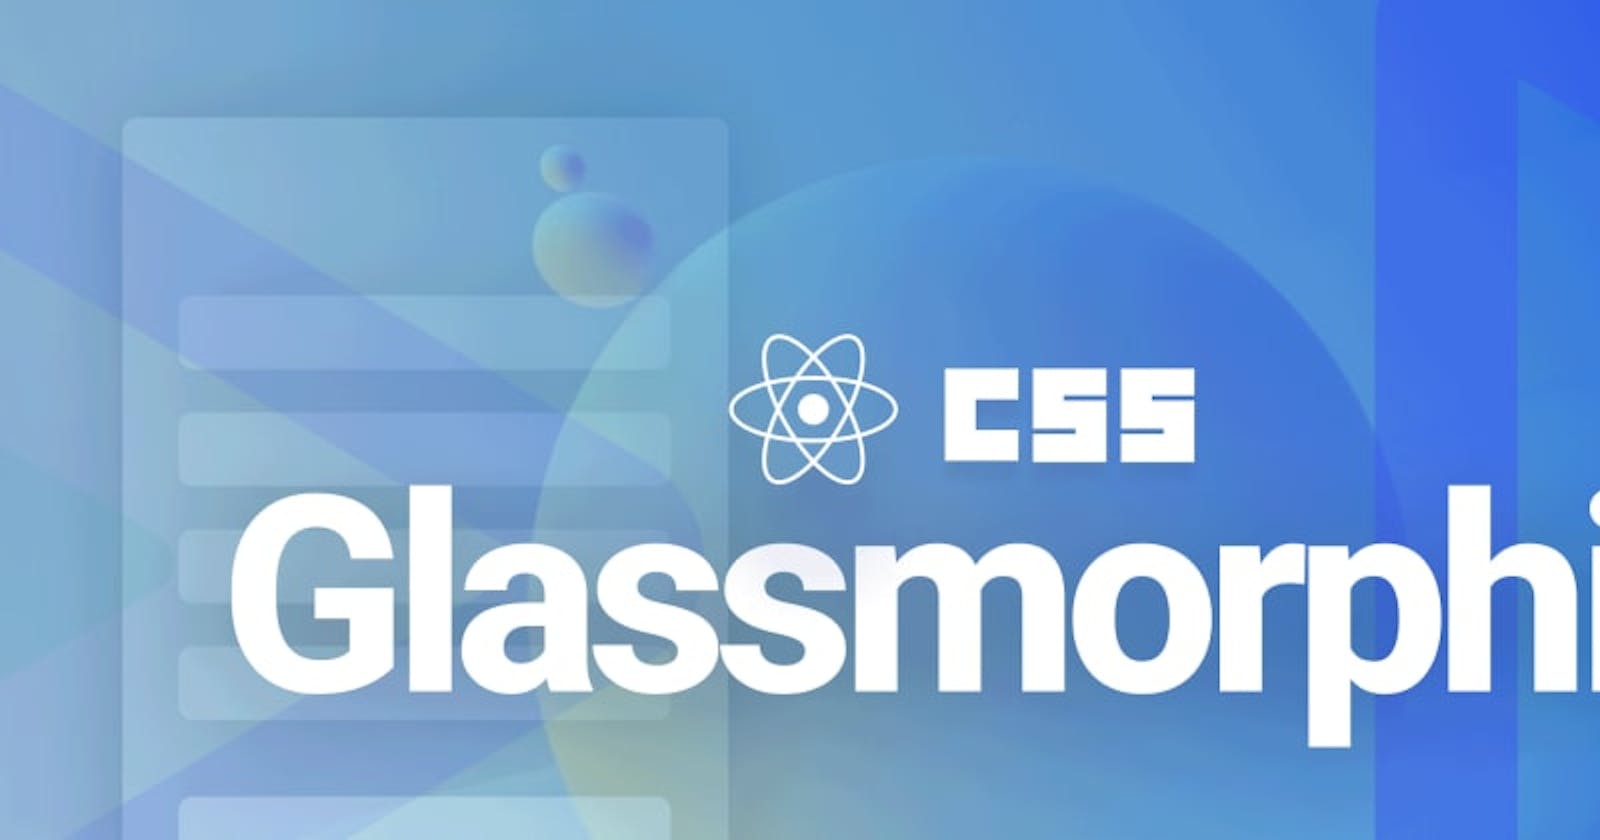 Glassmorphic UI in React using CSS